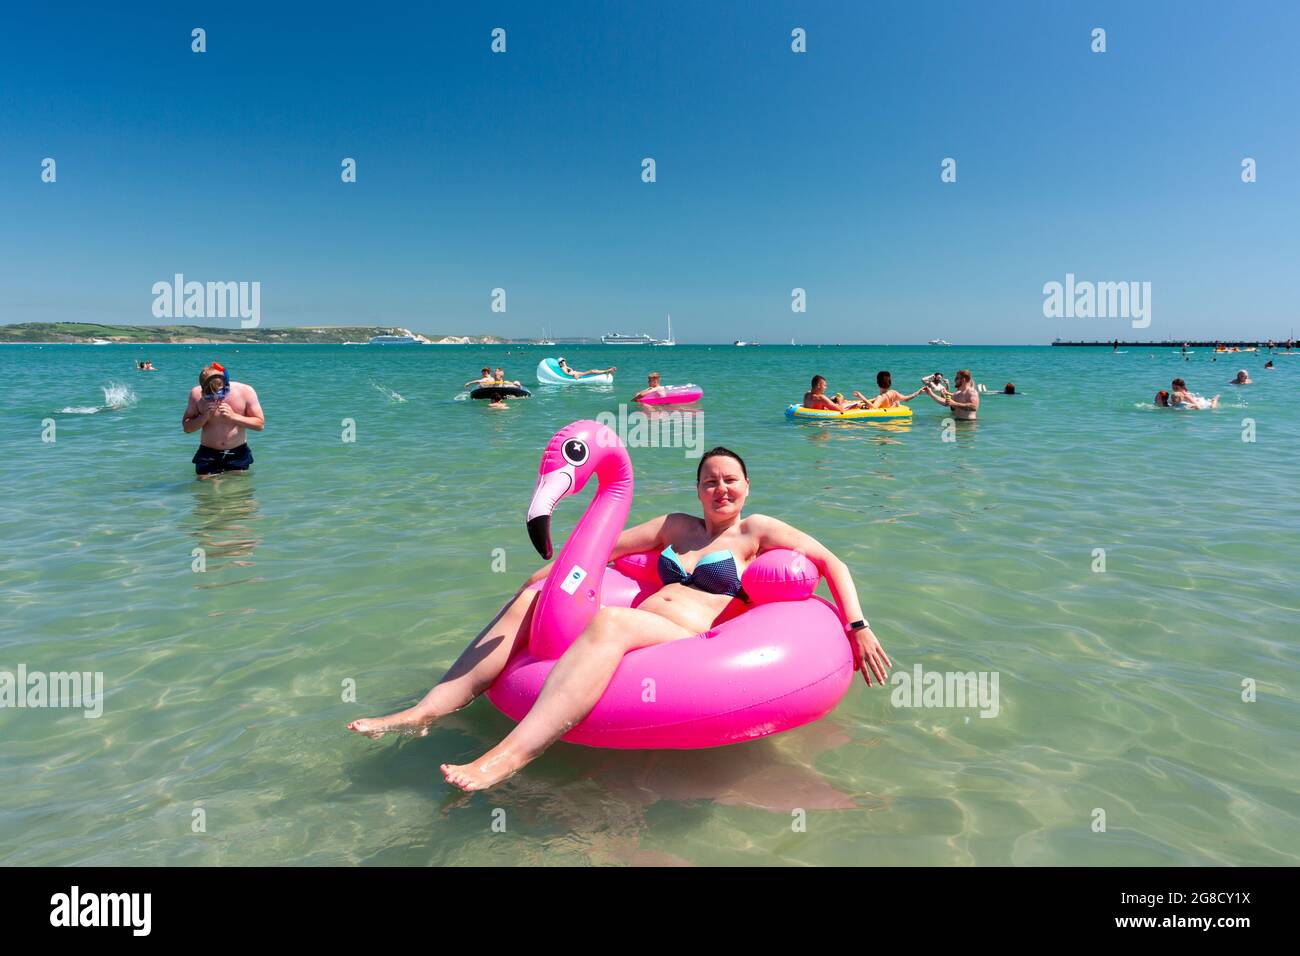 Überfülltes Meer in Weymouth. Touristen genießen heißes Wetter Stockfoto